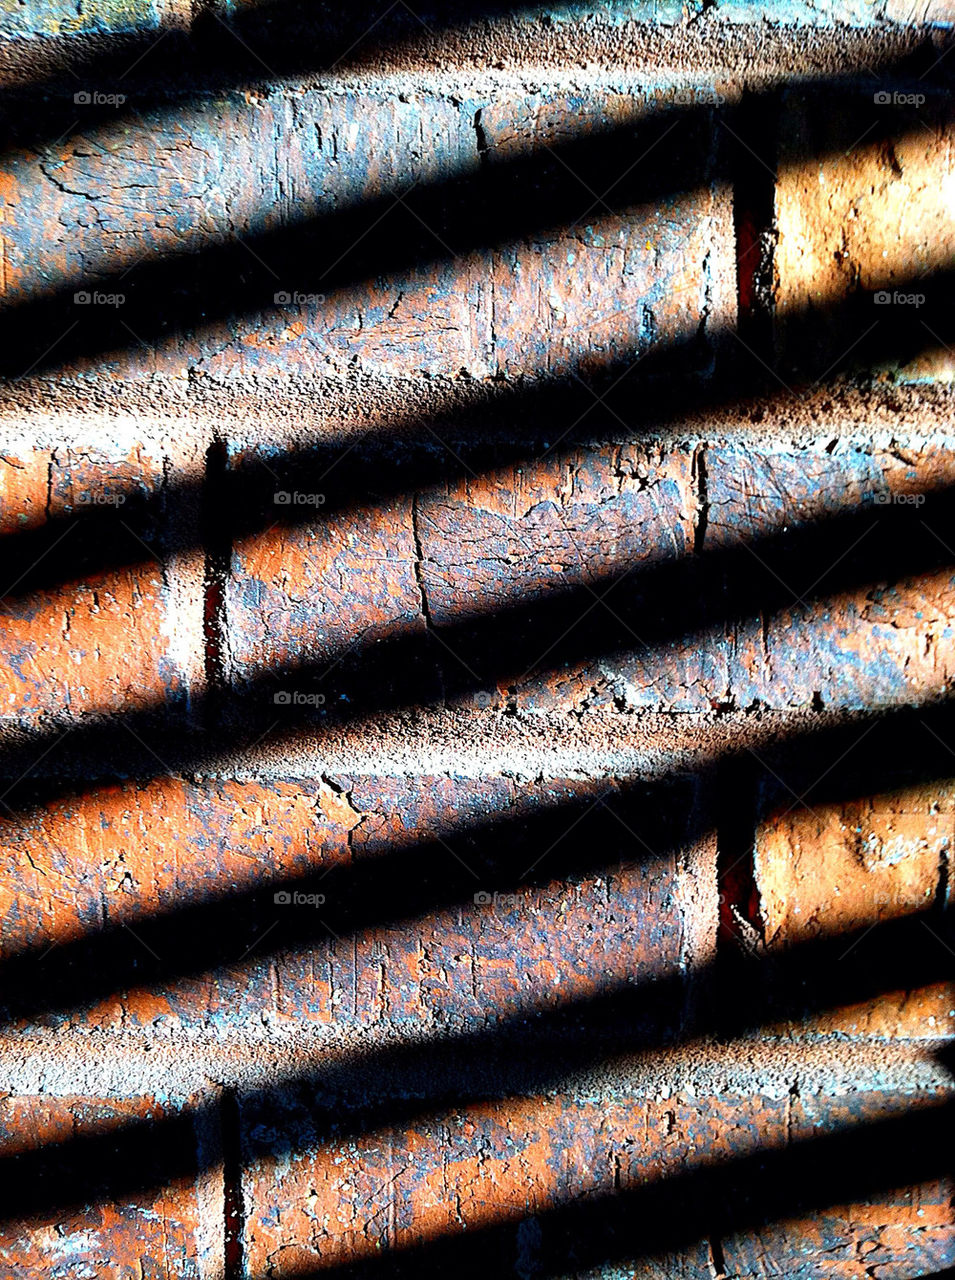 colourful shadows brick texture by wmm1969